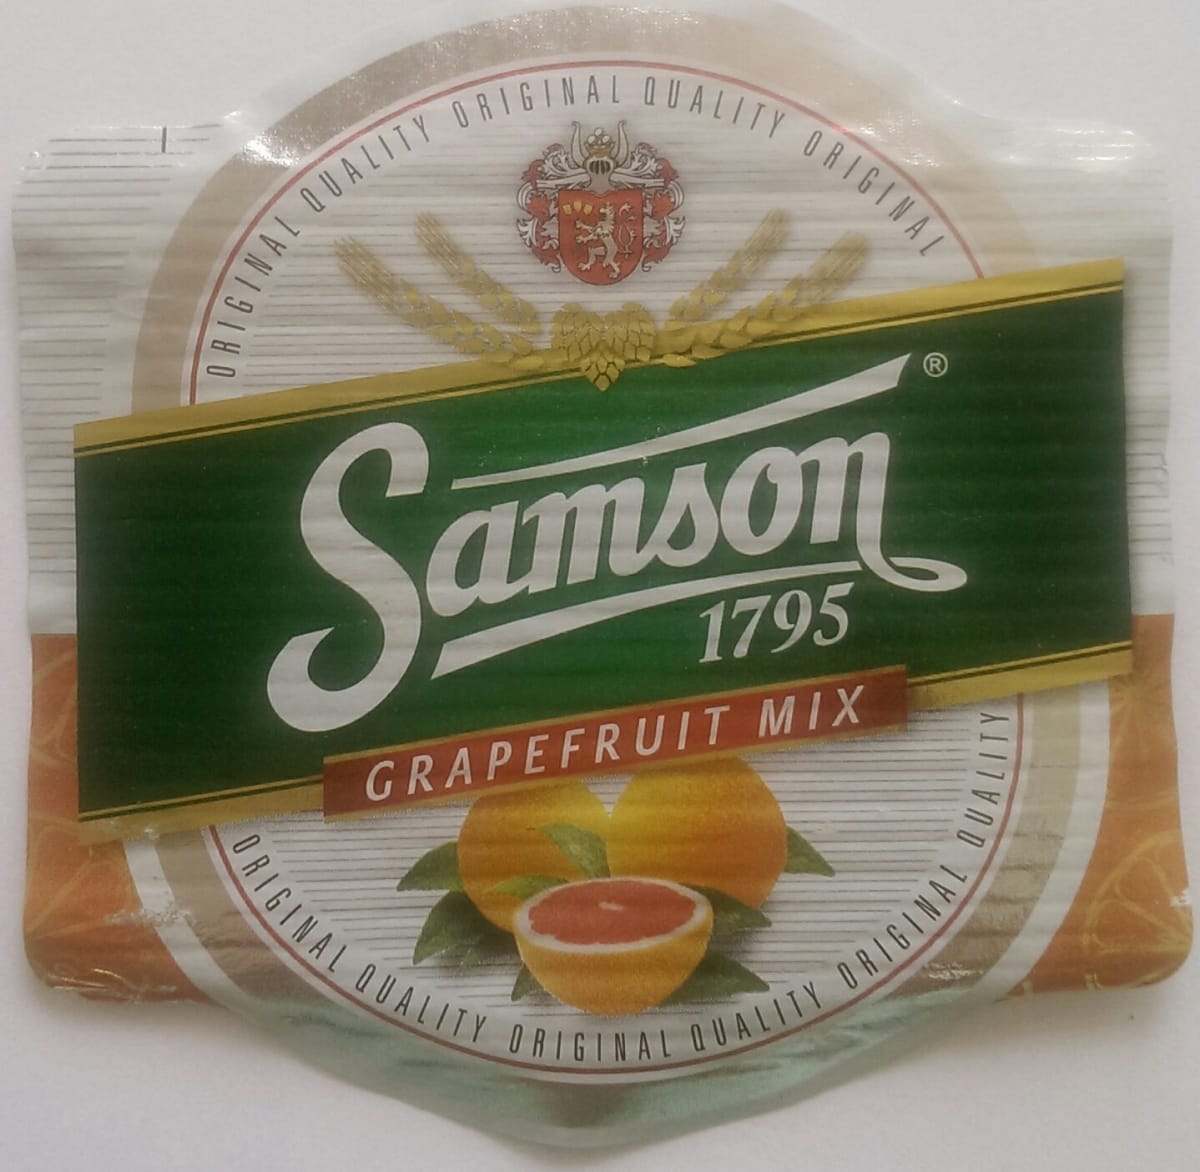 Samson Grapefruit Mix